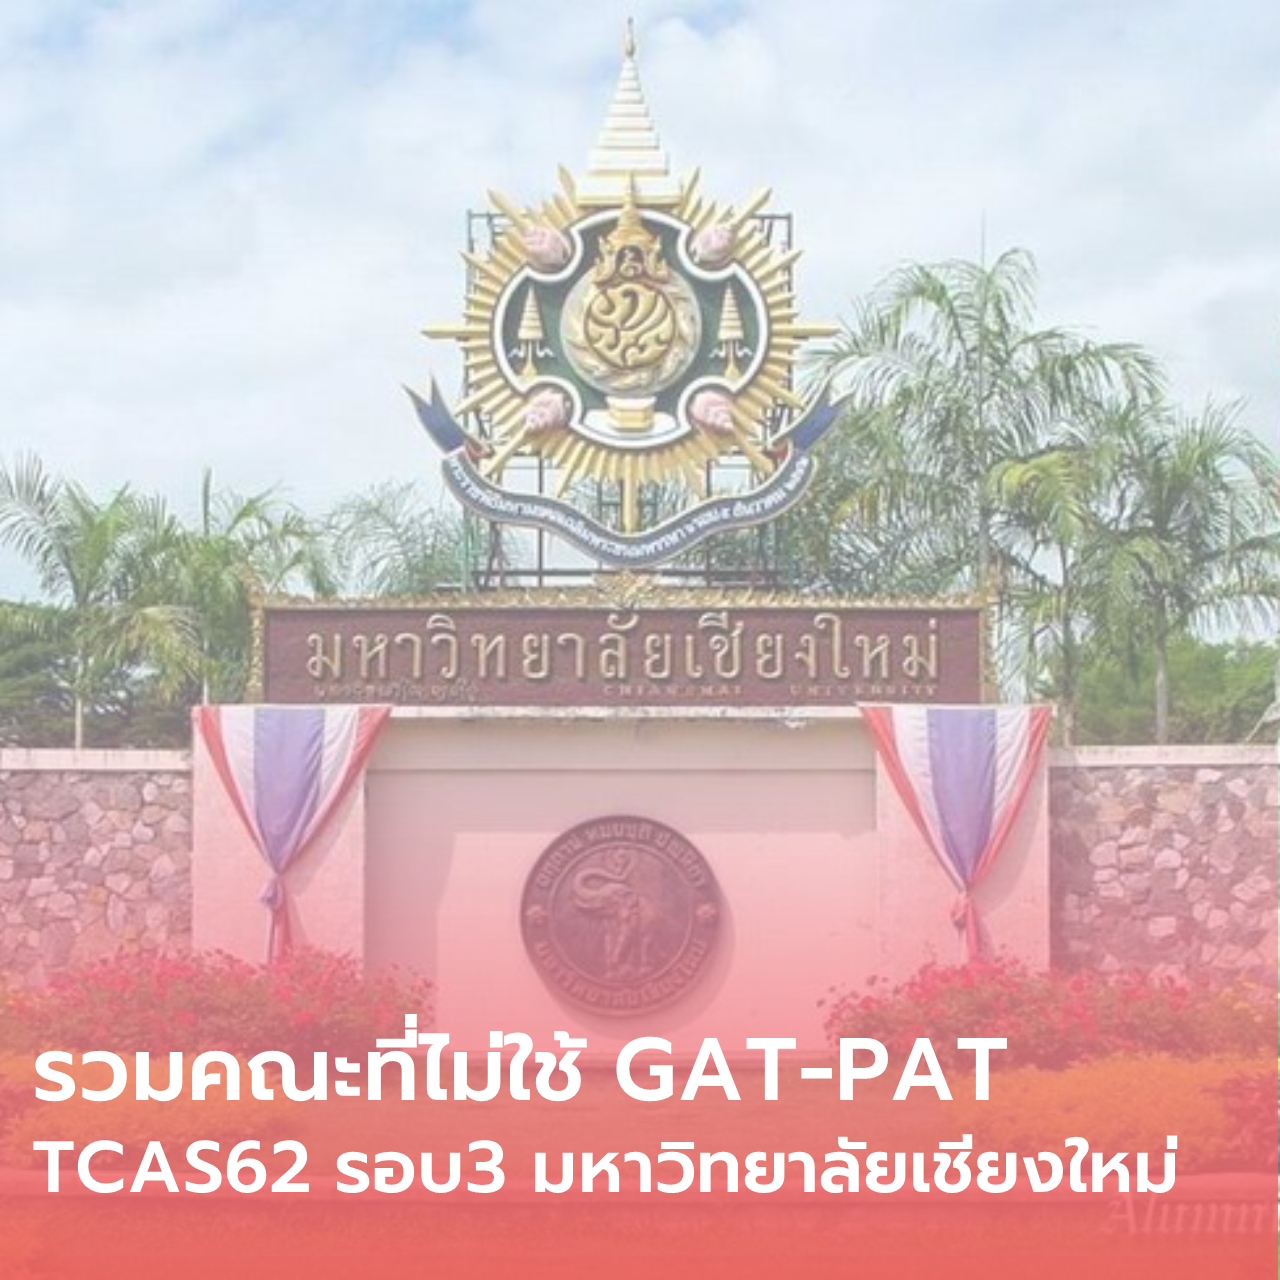  รวมคณะที่ไม่ใช้ GAT-PAT TCAS62 รอบ3 มหาวิทยาลัยเชียงใหม่